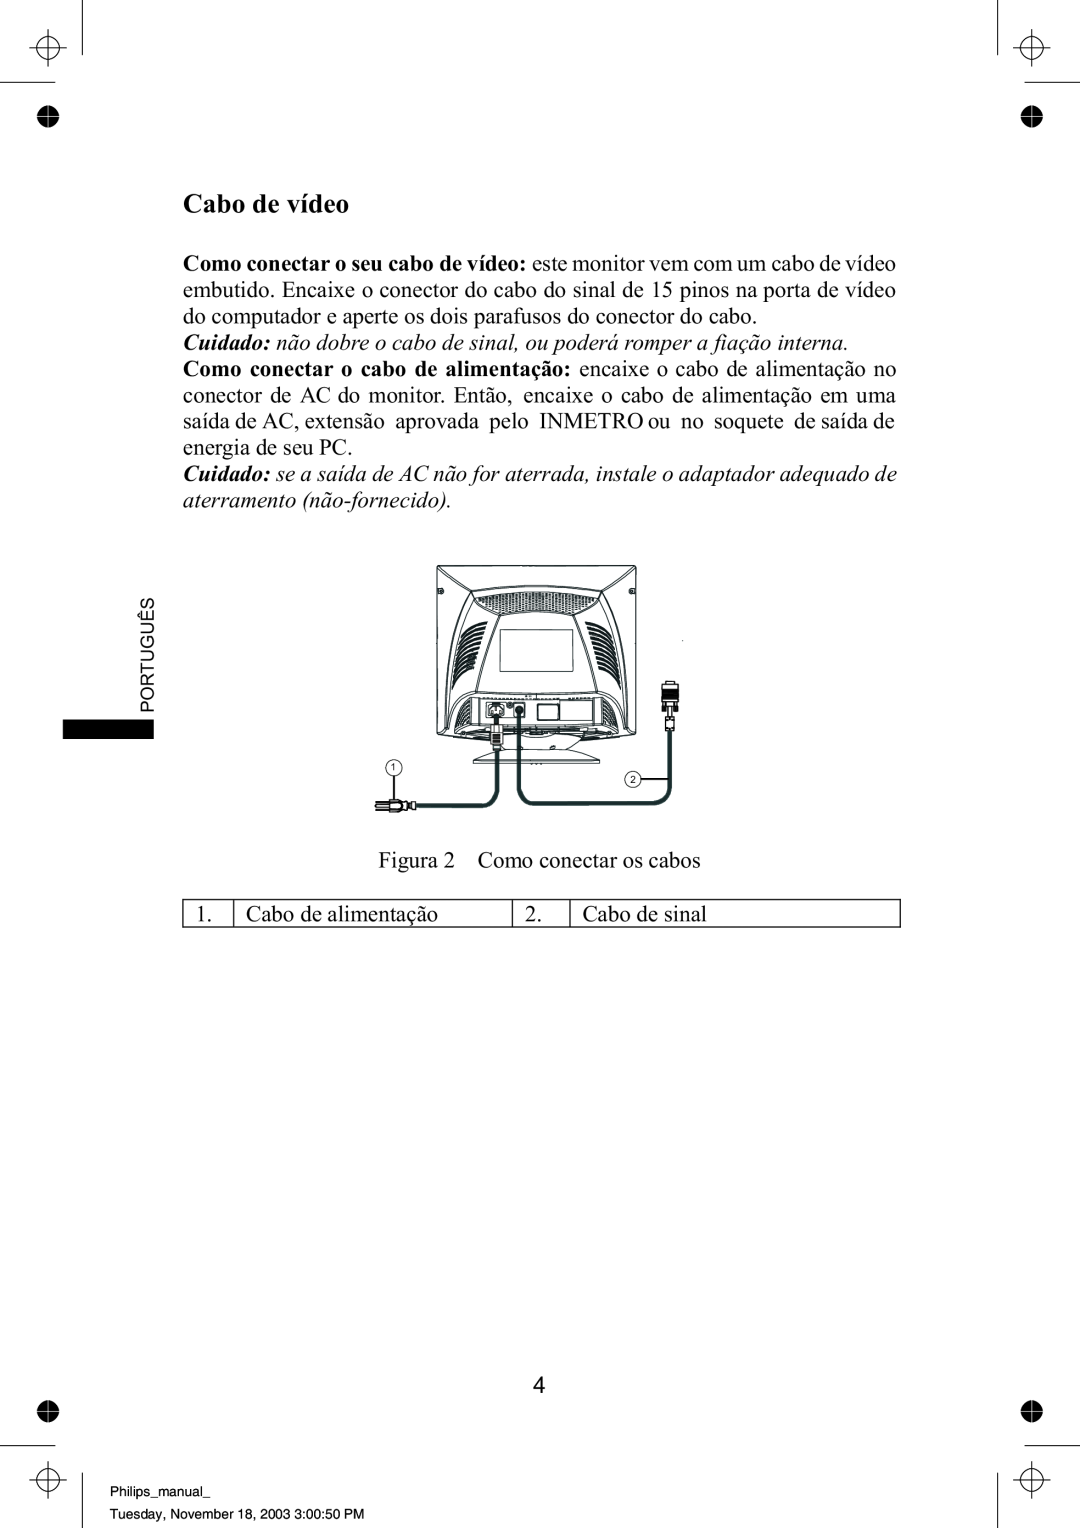 Philips 109B61 manual Cabo de vídeo, Cuidado não dobre o cabo de sinal, ou poderá romper a fiação interna 